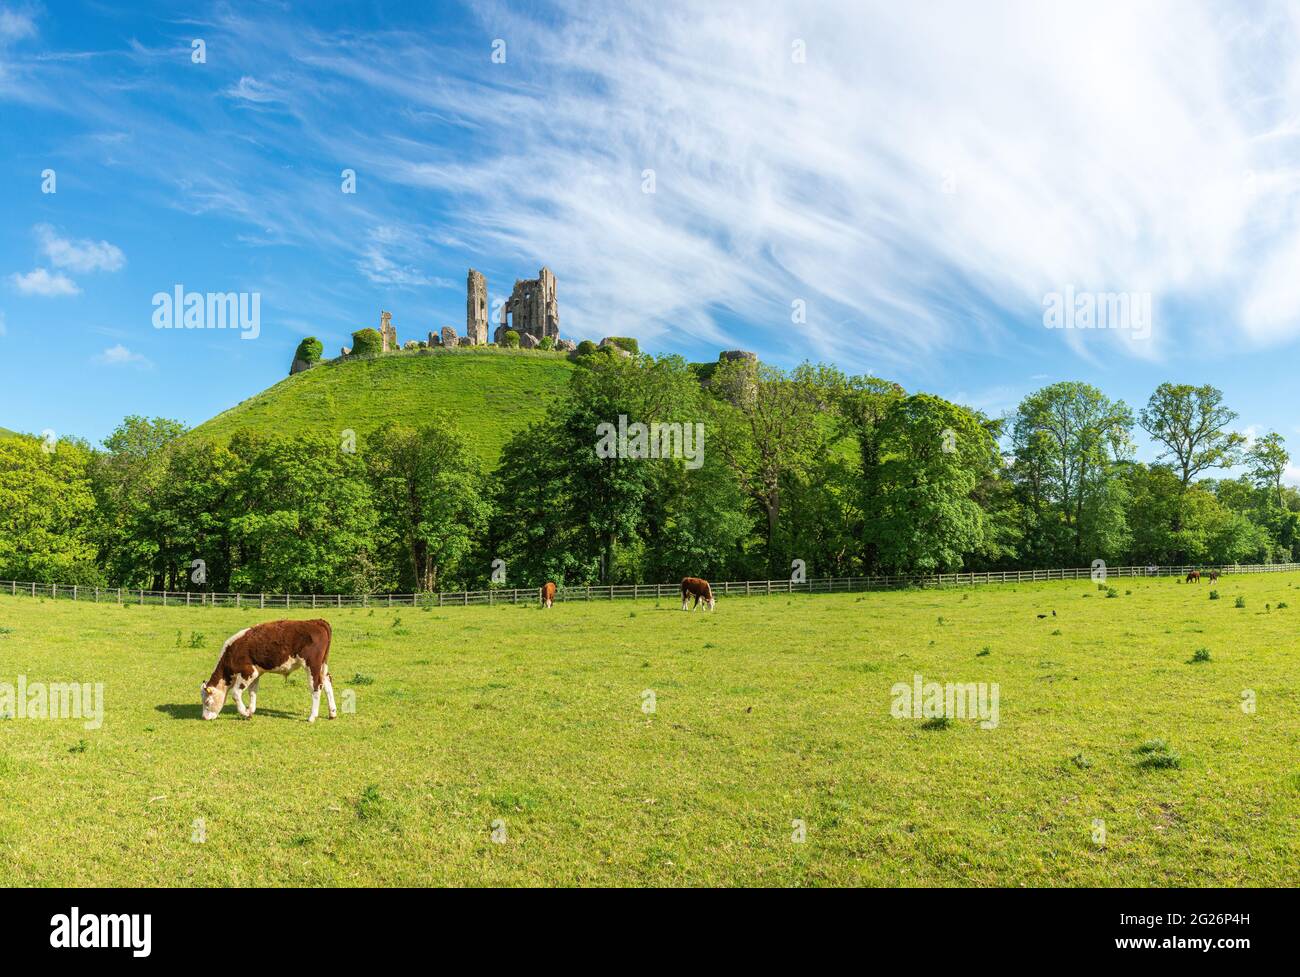 Château de Corfe avec une ligne d'arbres au bas de la colline et pâturage des vaches brunes et blanches dans le champ par une journée d'été lumineuse. Wareham, Dorset, Angleterre Banque D'Images